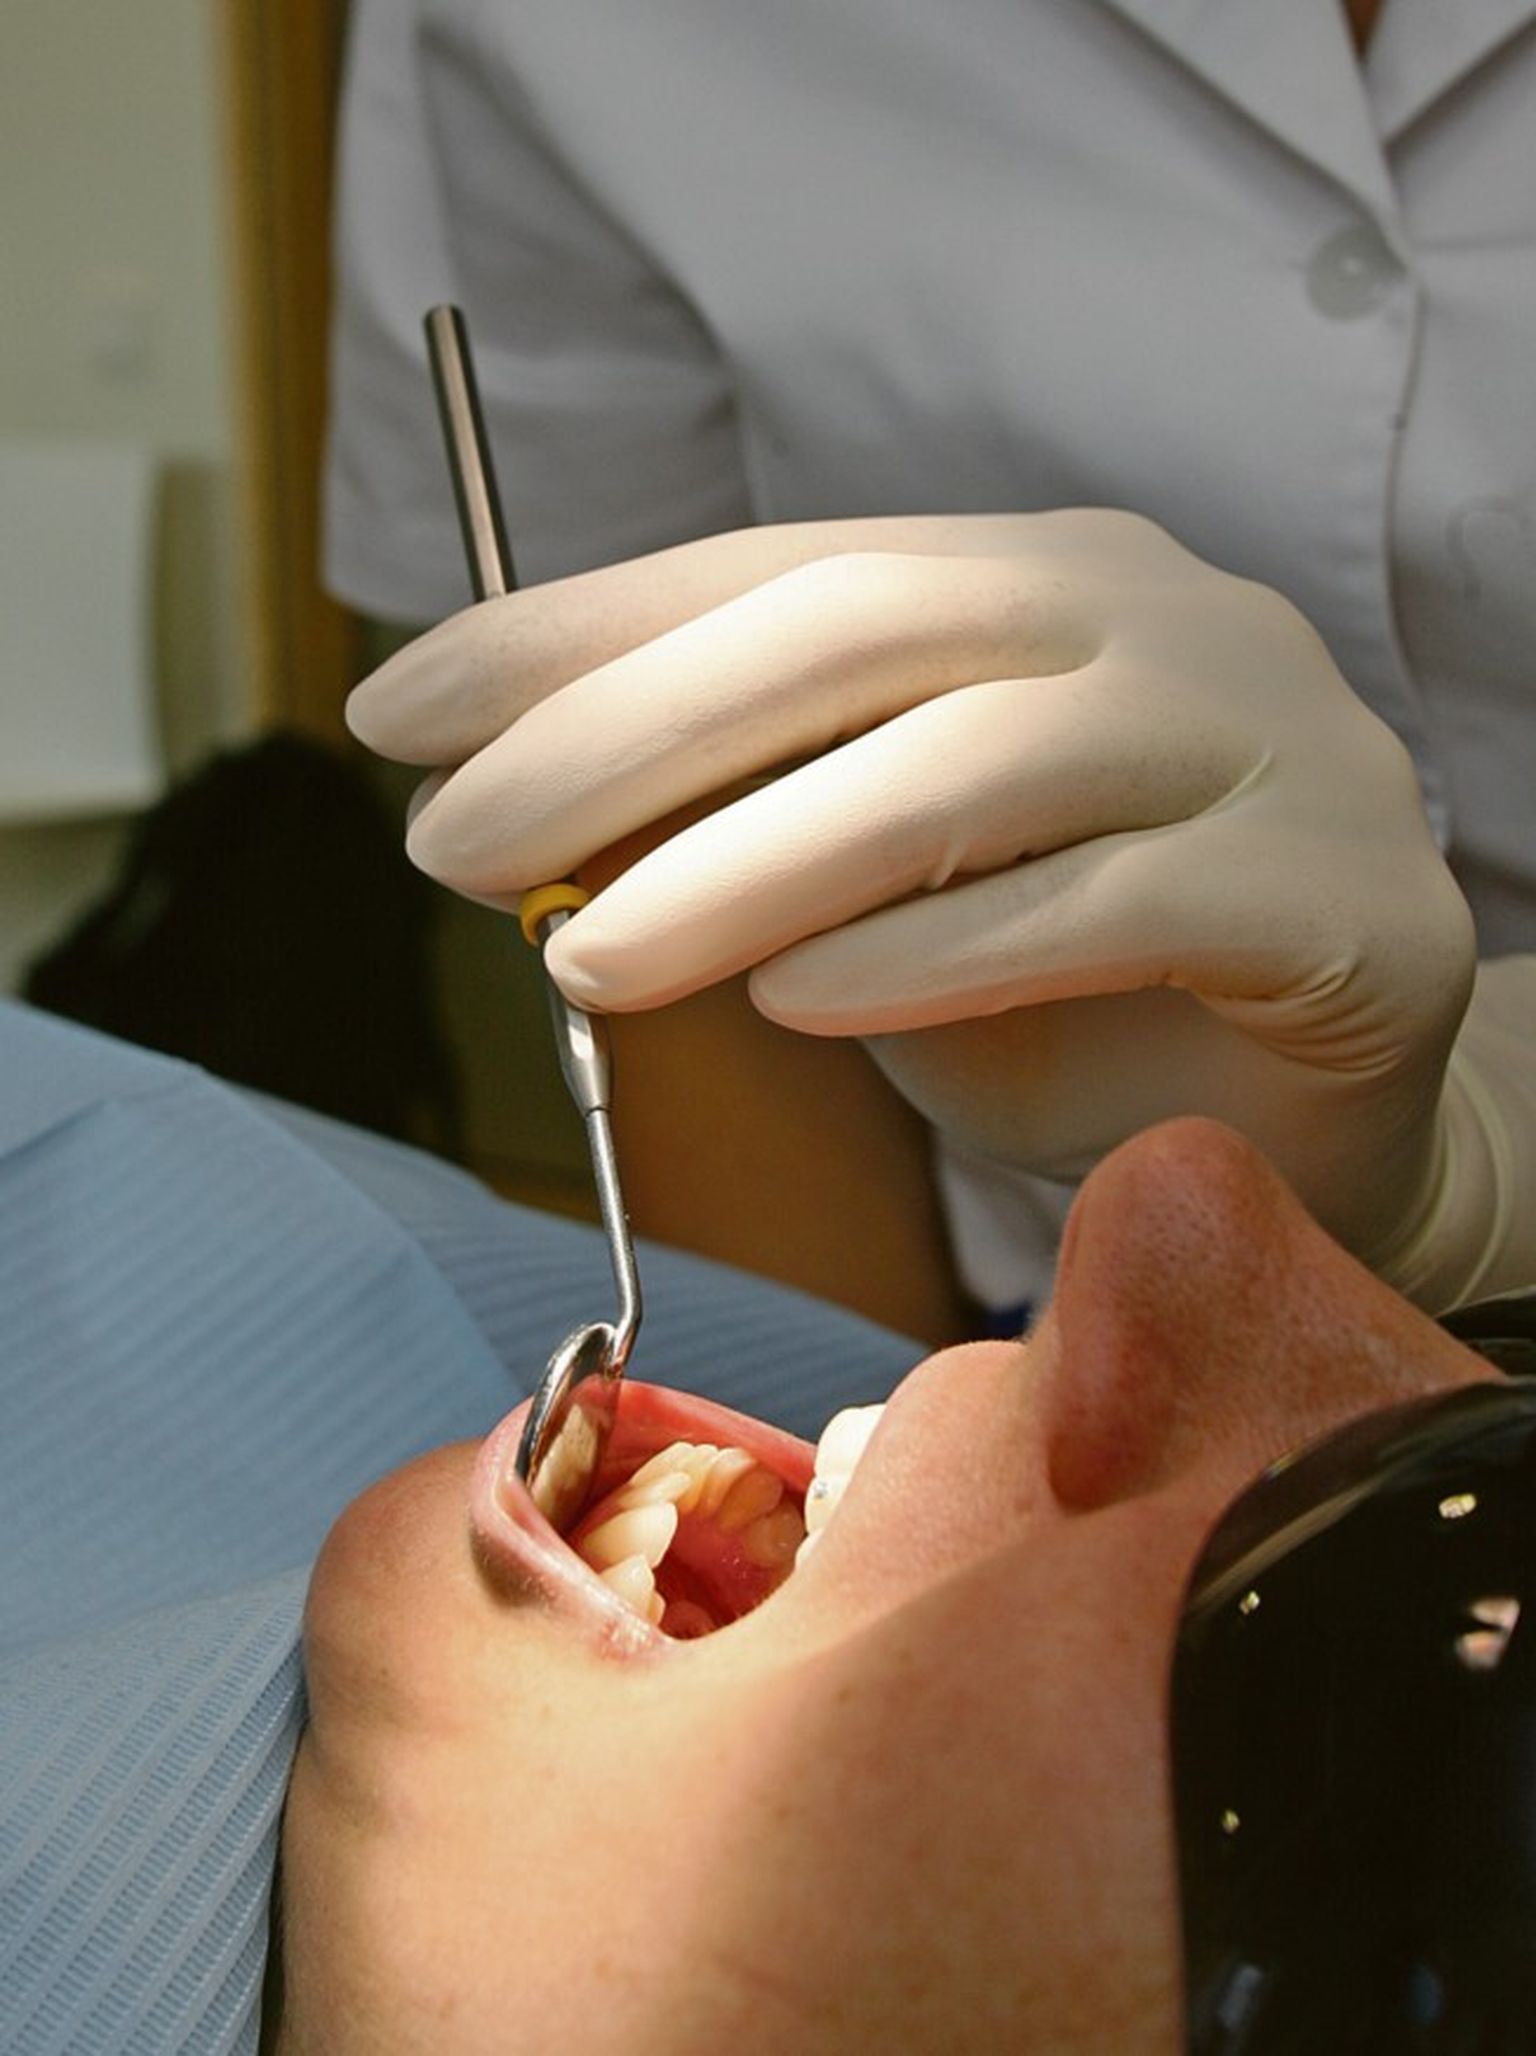 Правильное питание, тщательная гигиена полости рта и дружба со стоматологами помогут сохранить зубы здоровыми в течение всей жизни.